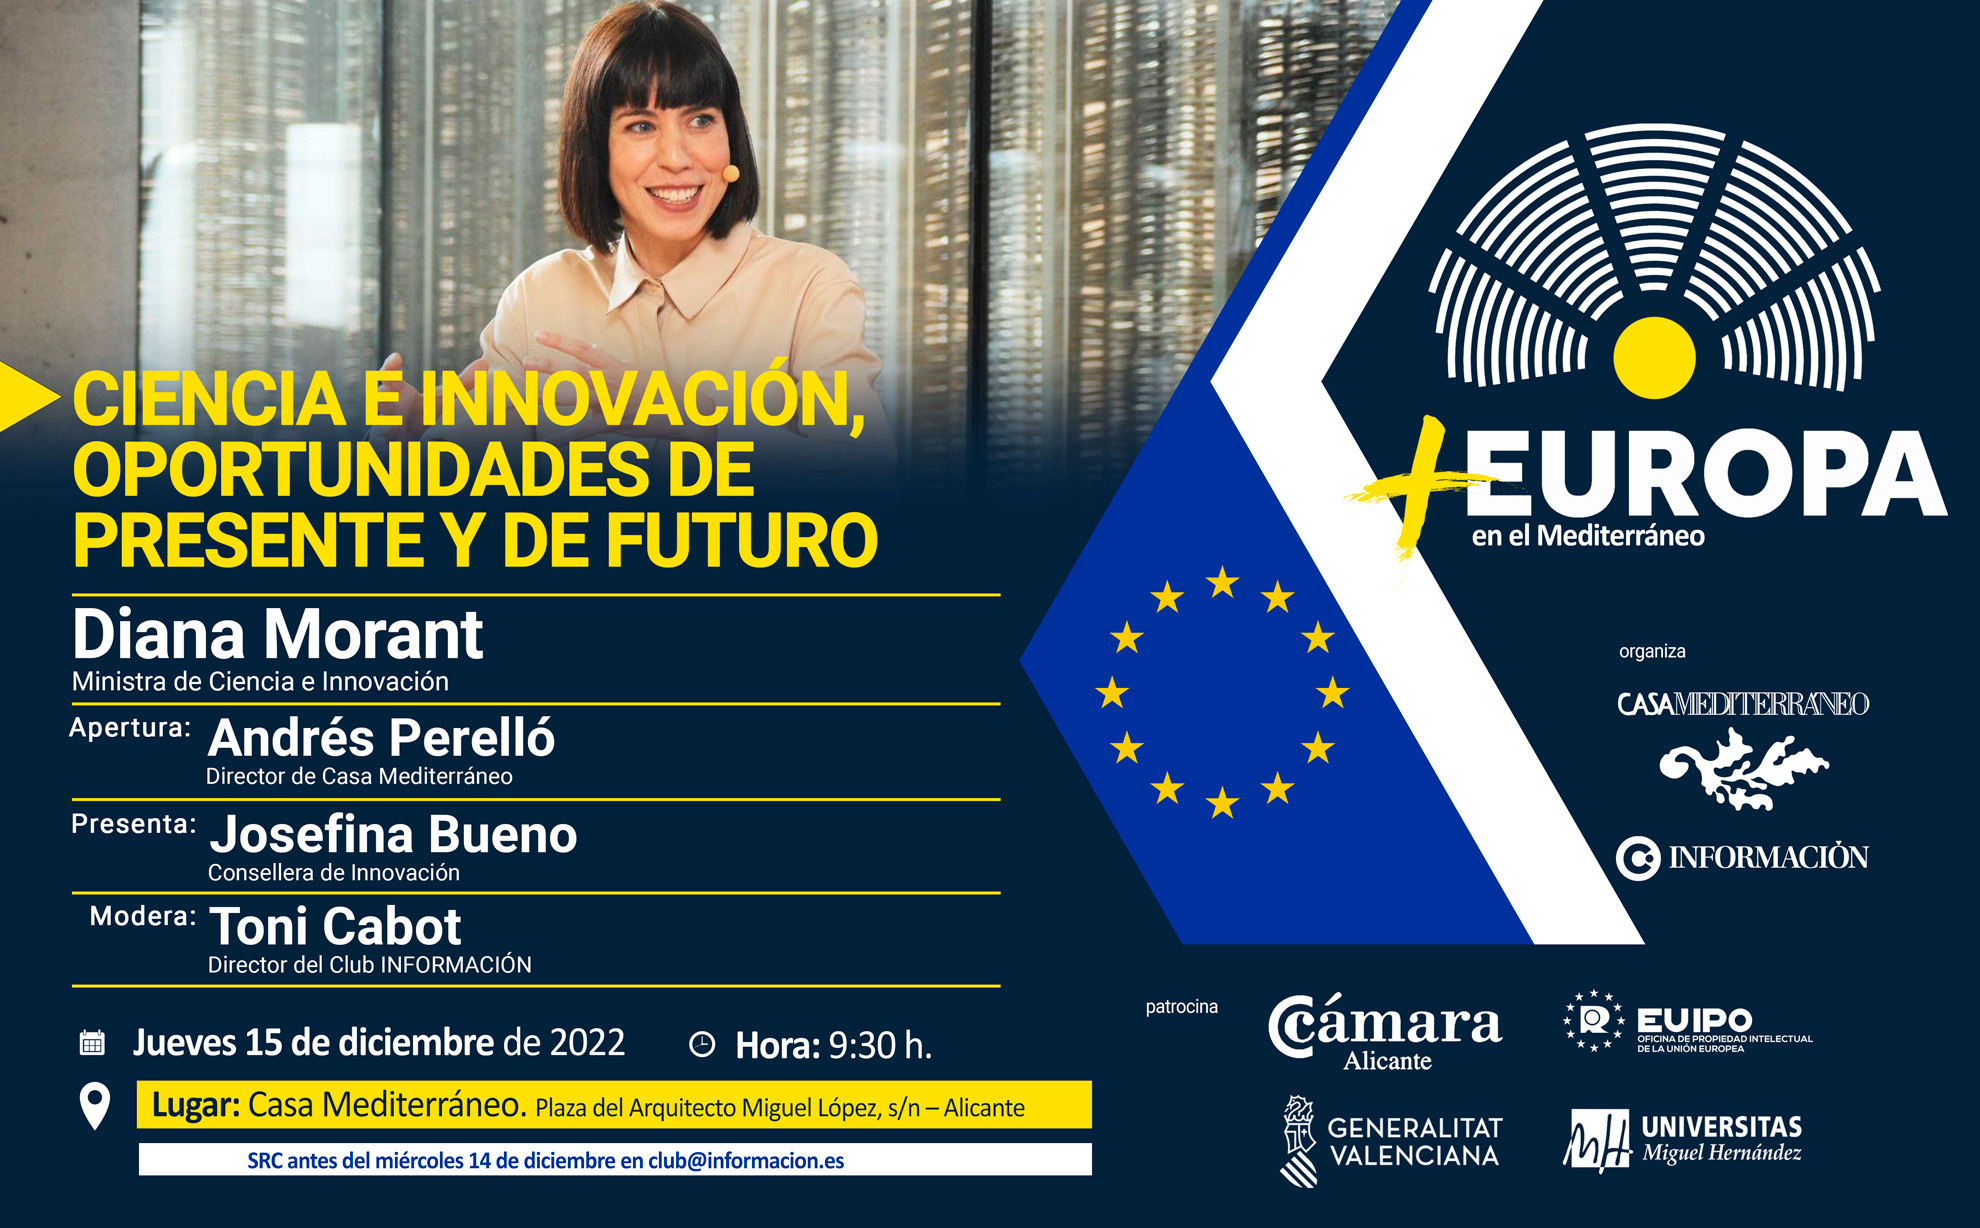 FORO +EUROPA EN EL MEDITERRÁNEO: “Ciencia e Innovación, oportunidades de presente y de futuro”